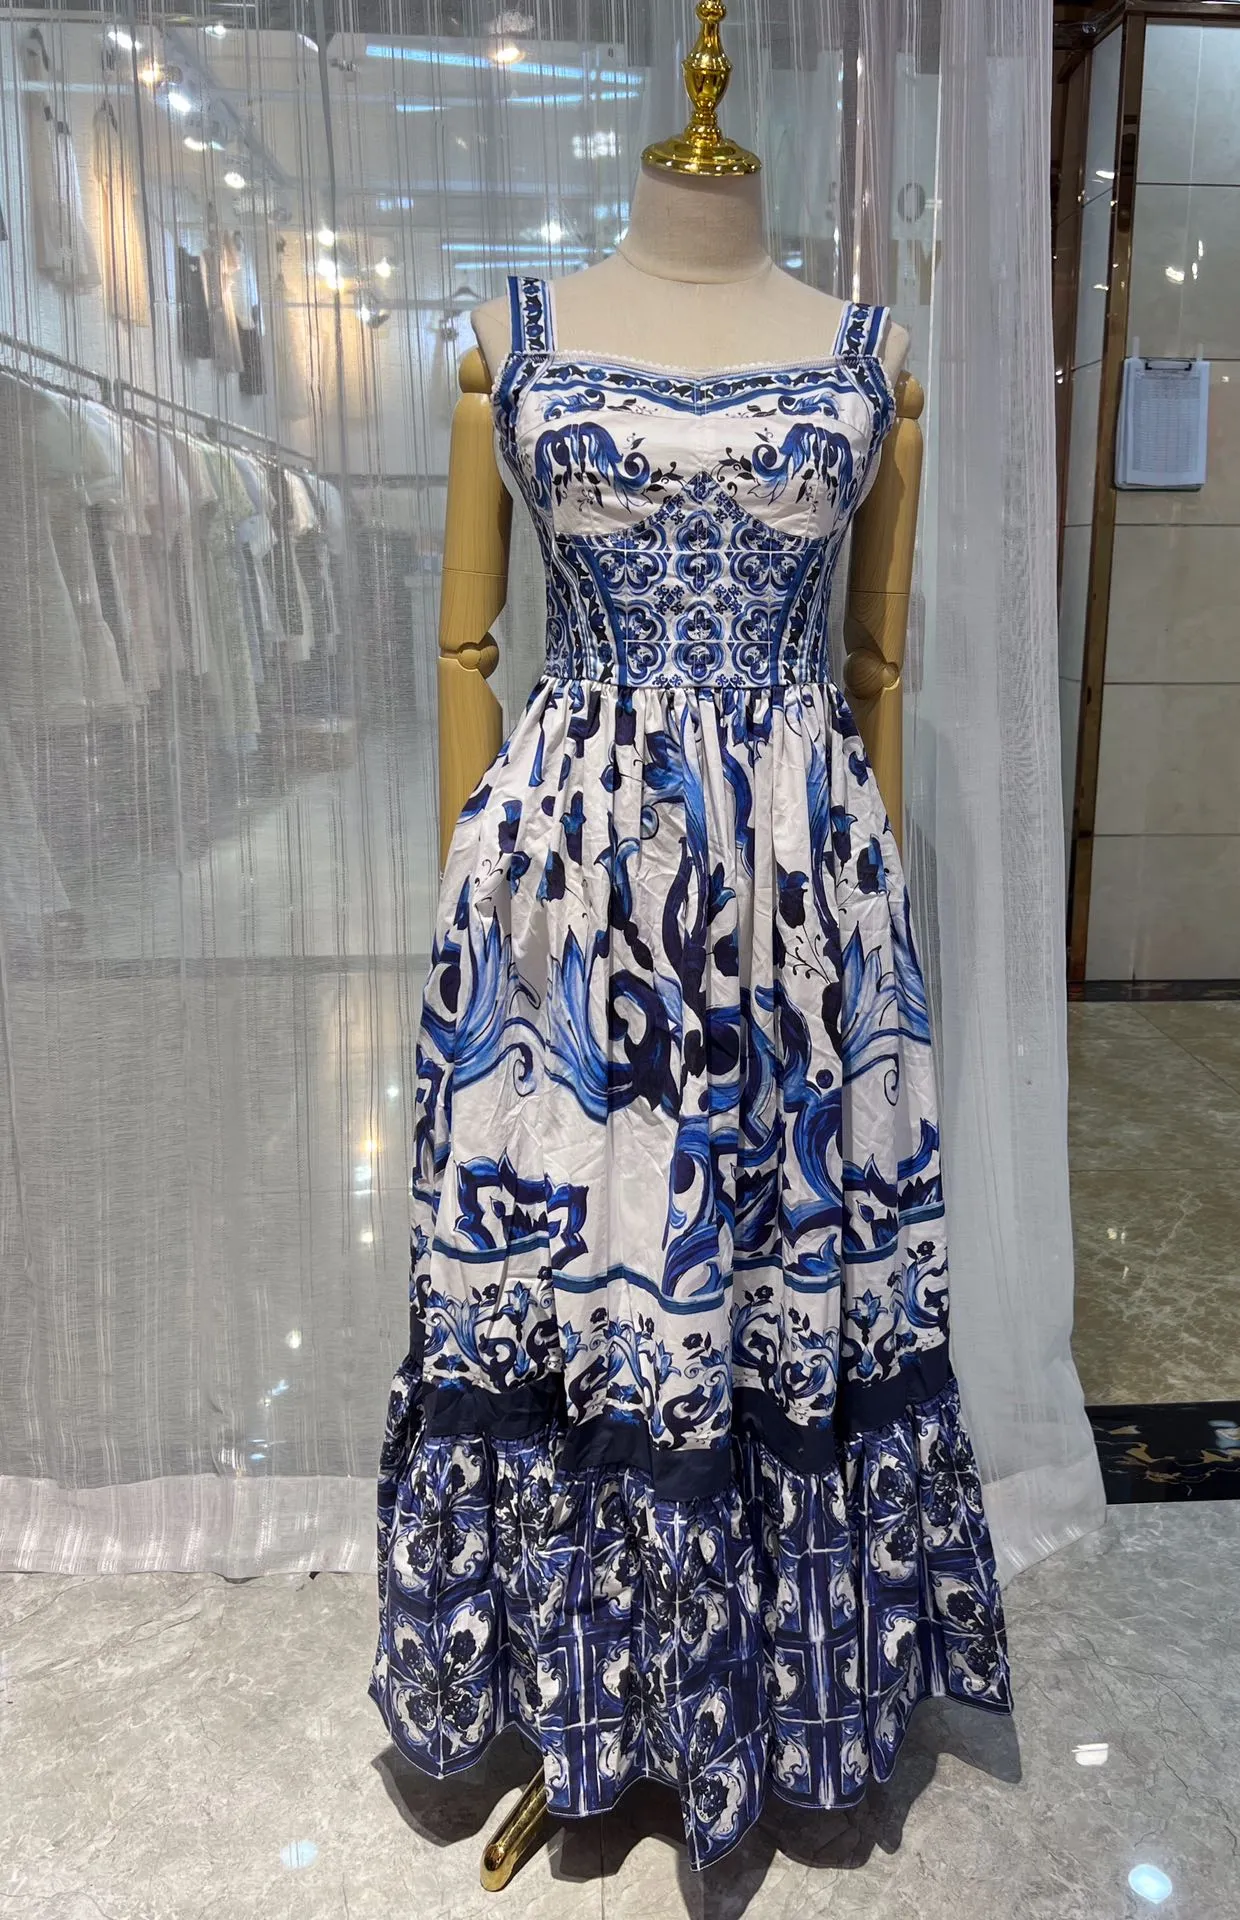 Mavi ve Beyaz Porselen Desen Tasarım Konumlandırma, Floral Heavy Industry Dantel Tasarım Malzemesi, 3.4 Metre Büyük Kem Bel Kapatma Elbisesi ile İtalyan Tasarımcı Elbise